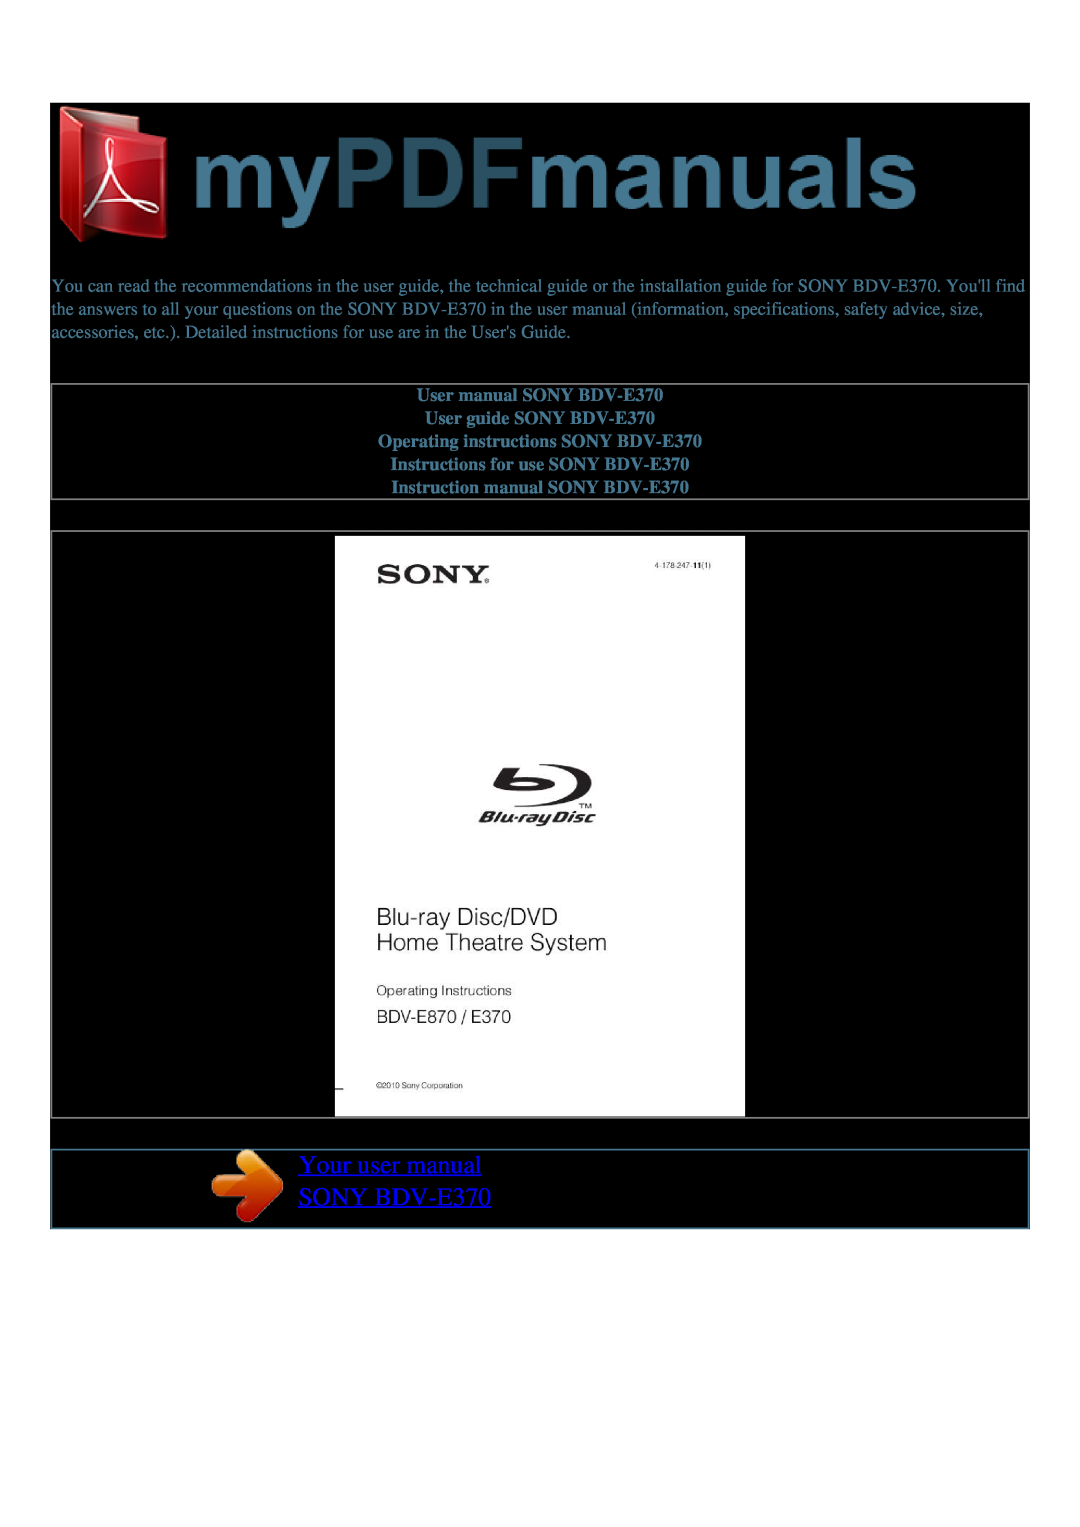 Sony BDV-E370 quick start Sony 5.1 Blu-rayDisc System, 850W watt 5.1 channel surround sound 142Wx5+140W4, Key Features 